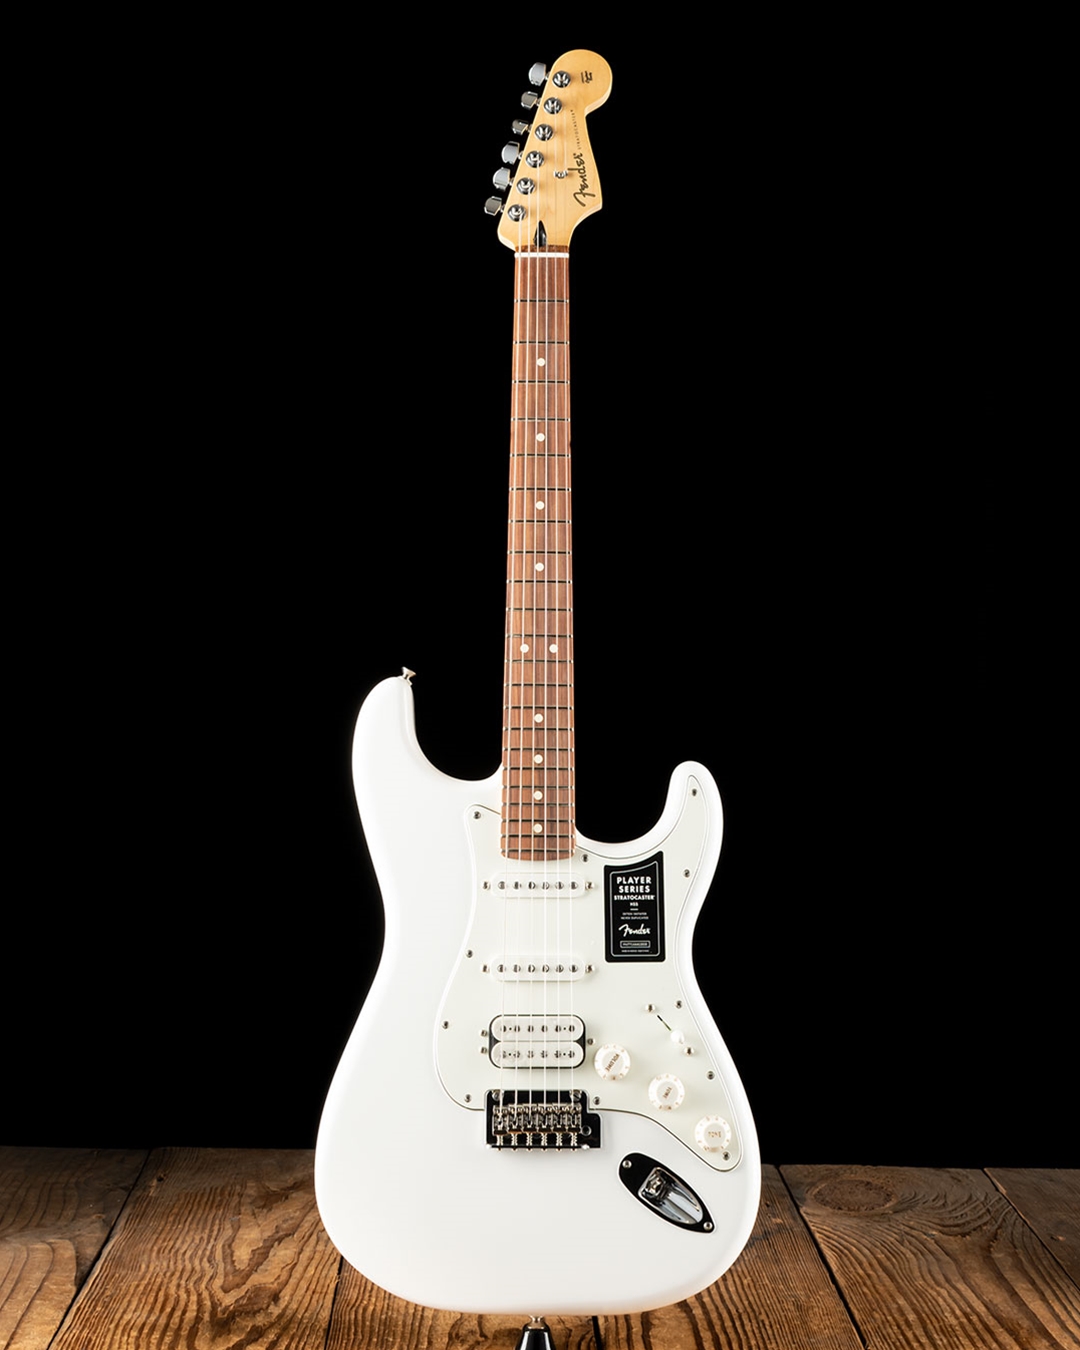 Fender Player Stratocaster HSS - Polar White